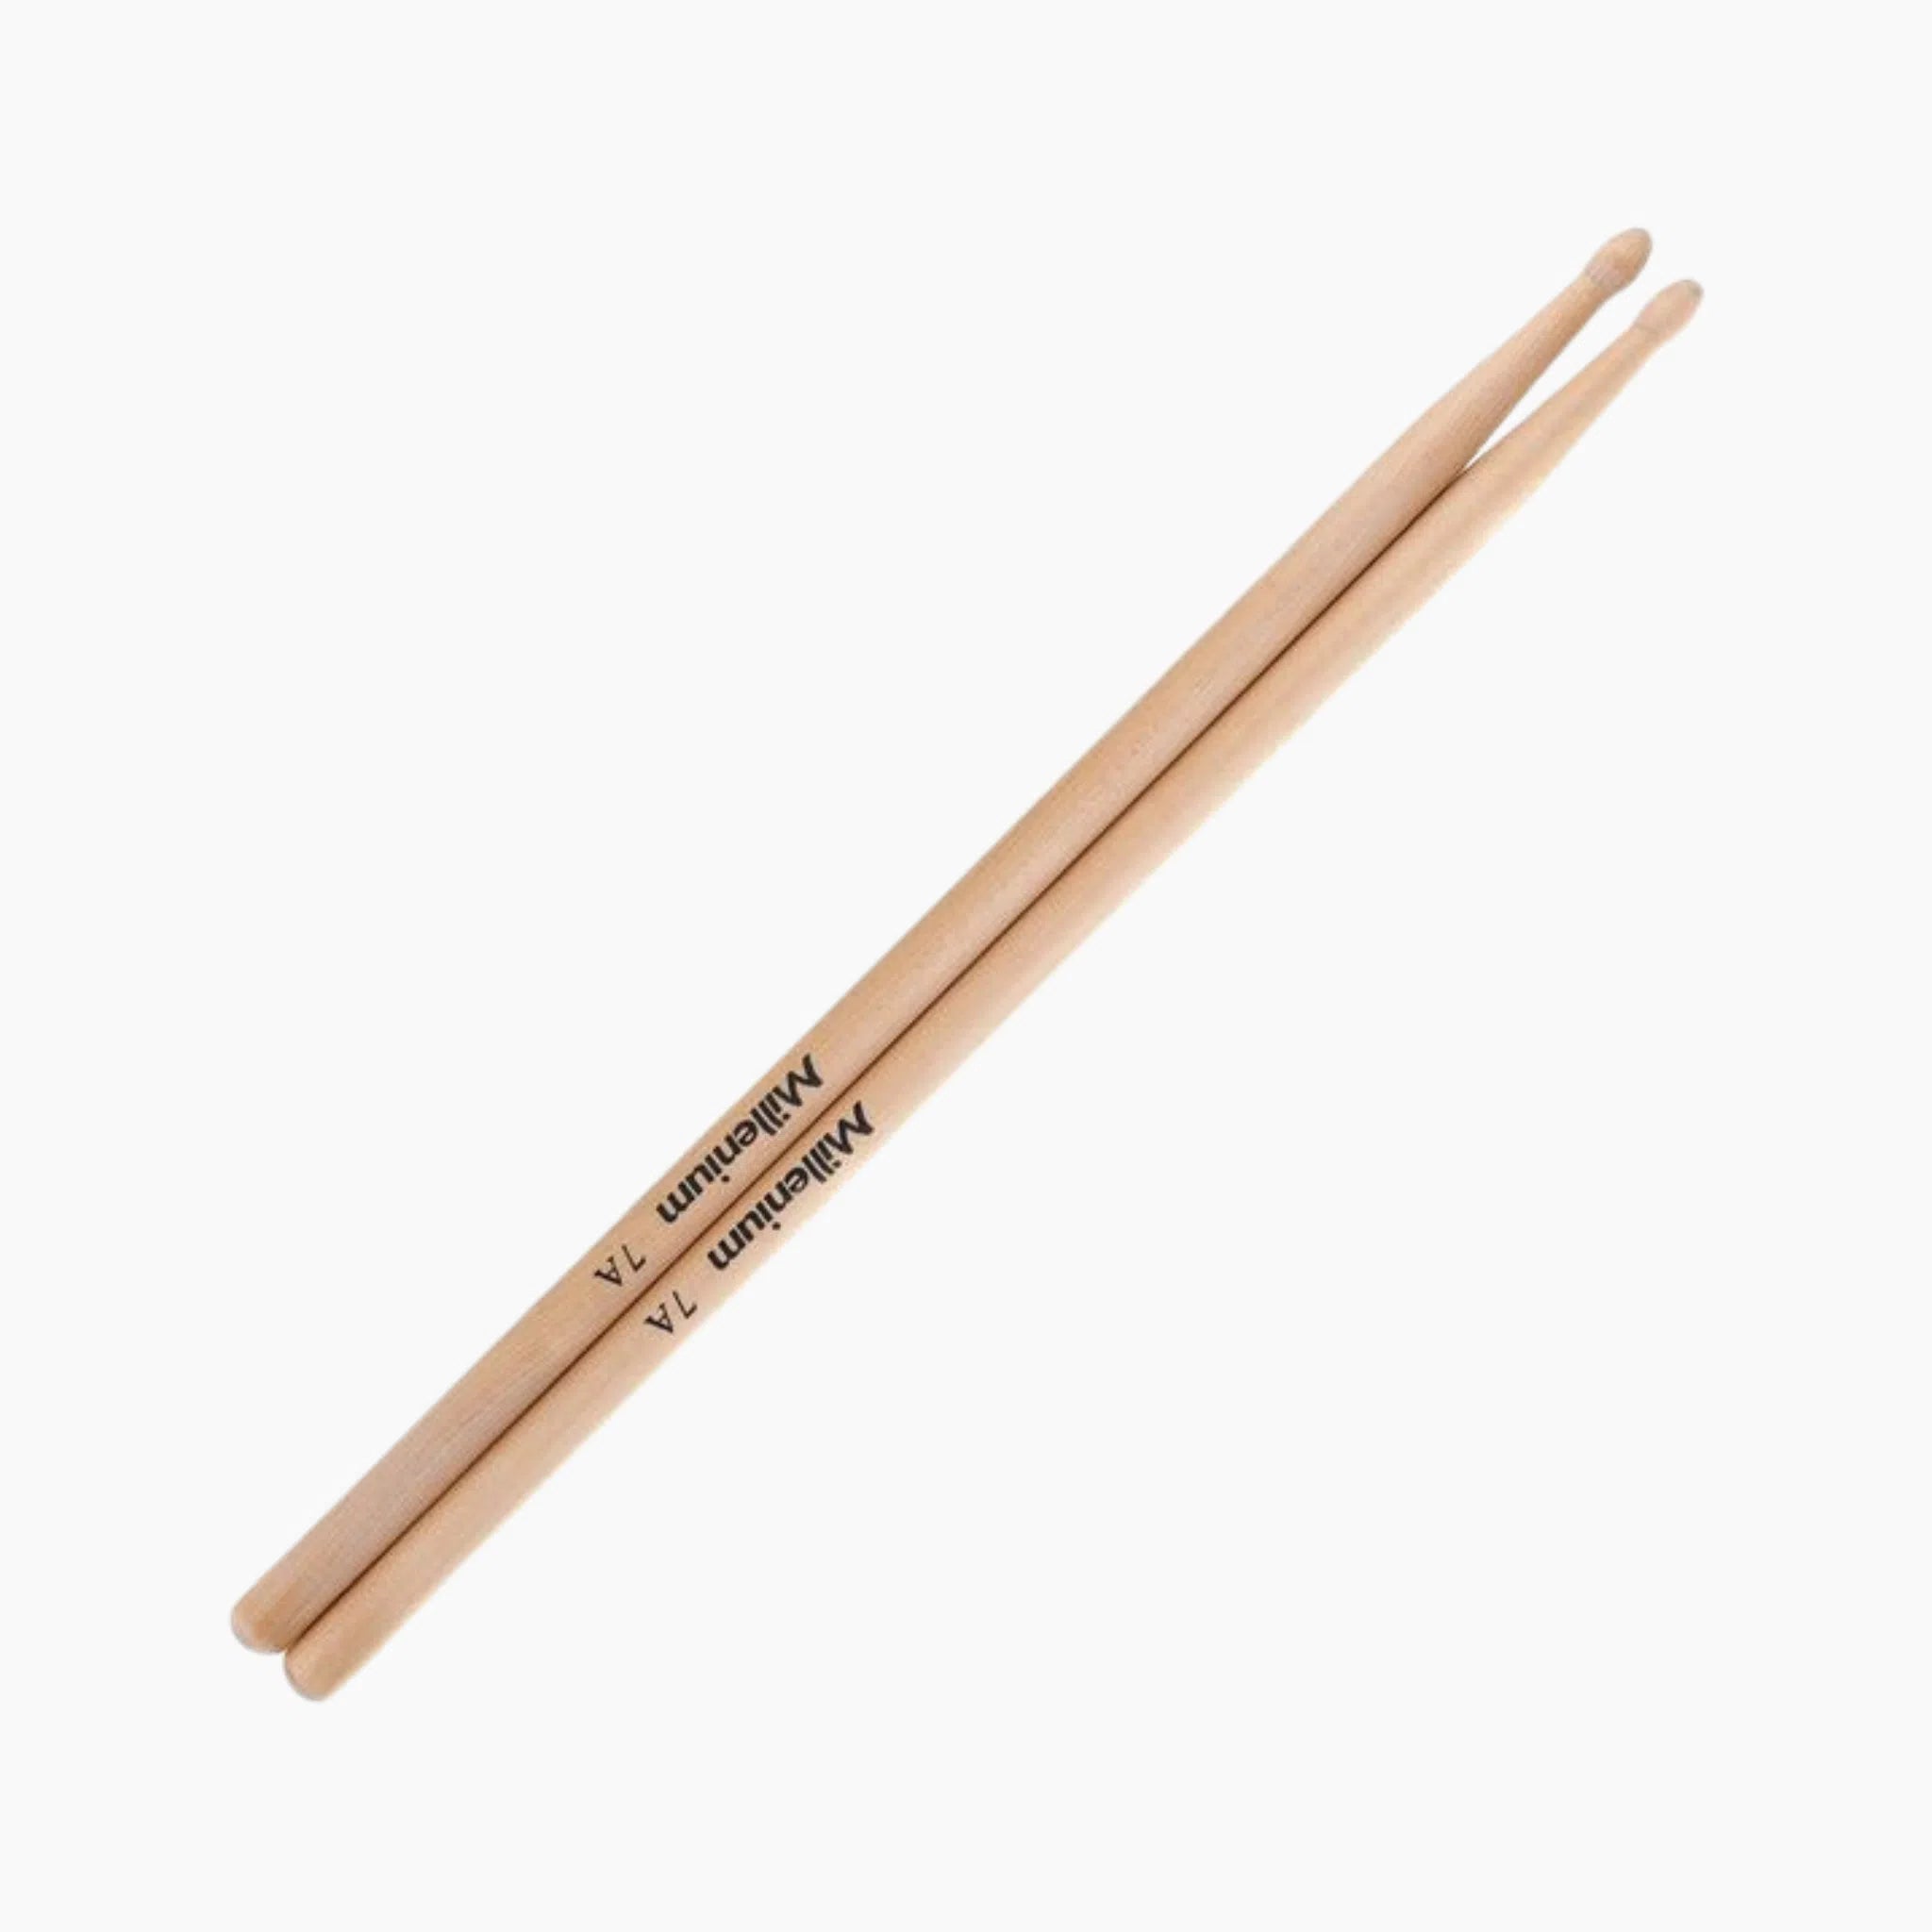 Millenium 7A Drum Sticks Maple Wood